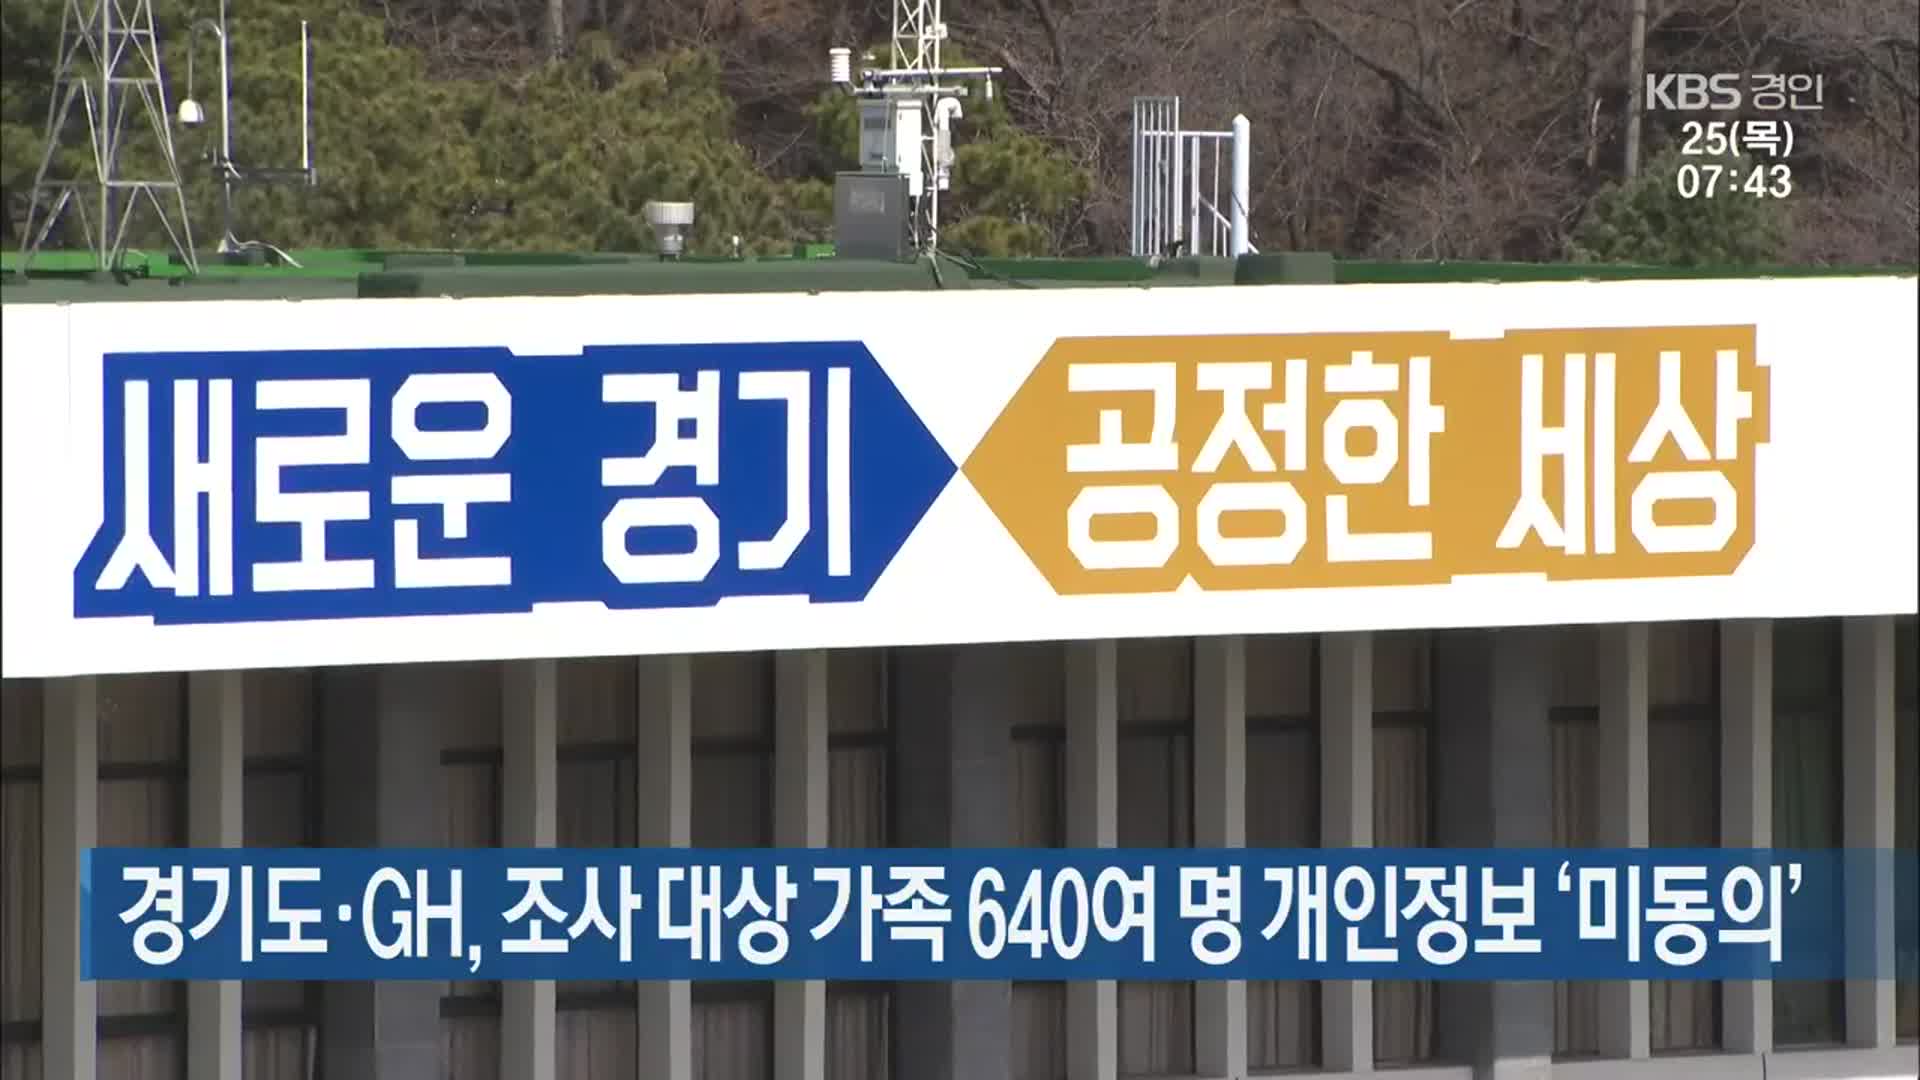 경기도·GH, 조사 대상 가족 640여 명 개인정보 ‘미동의’